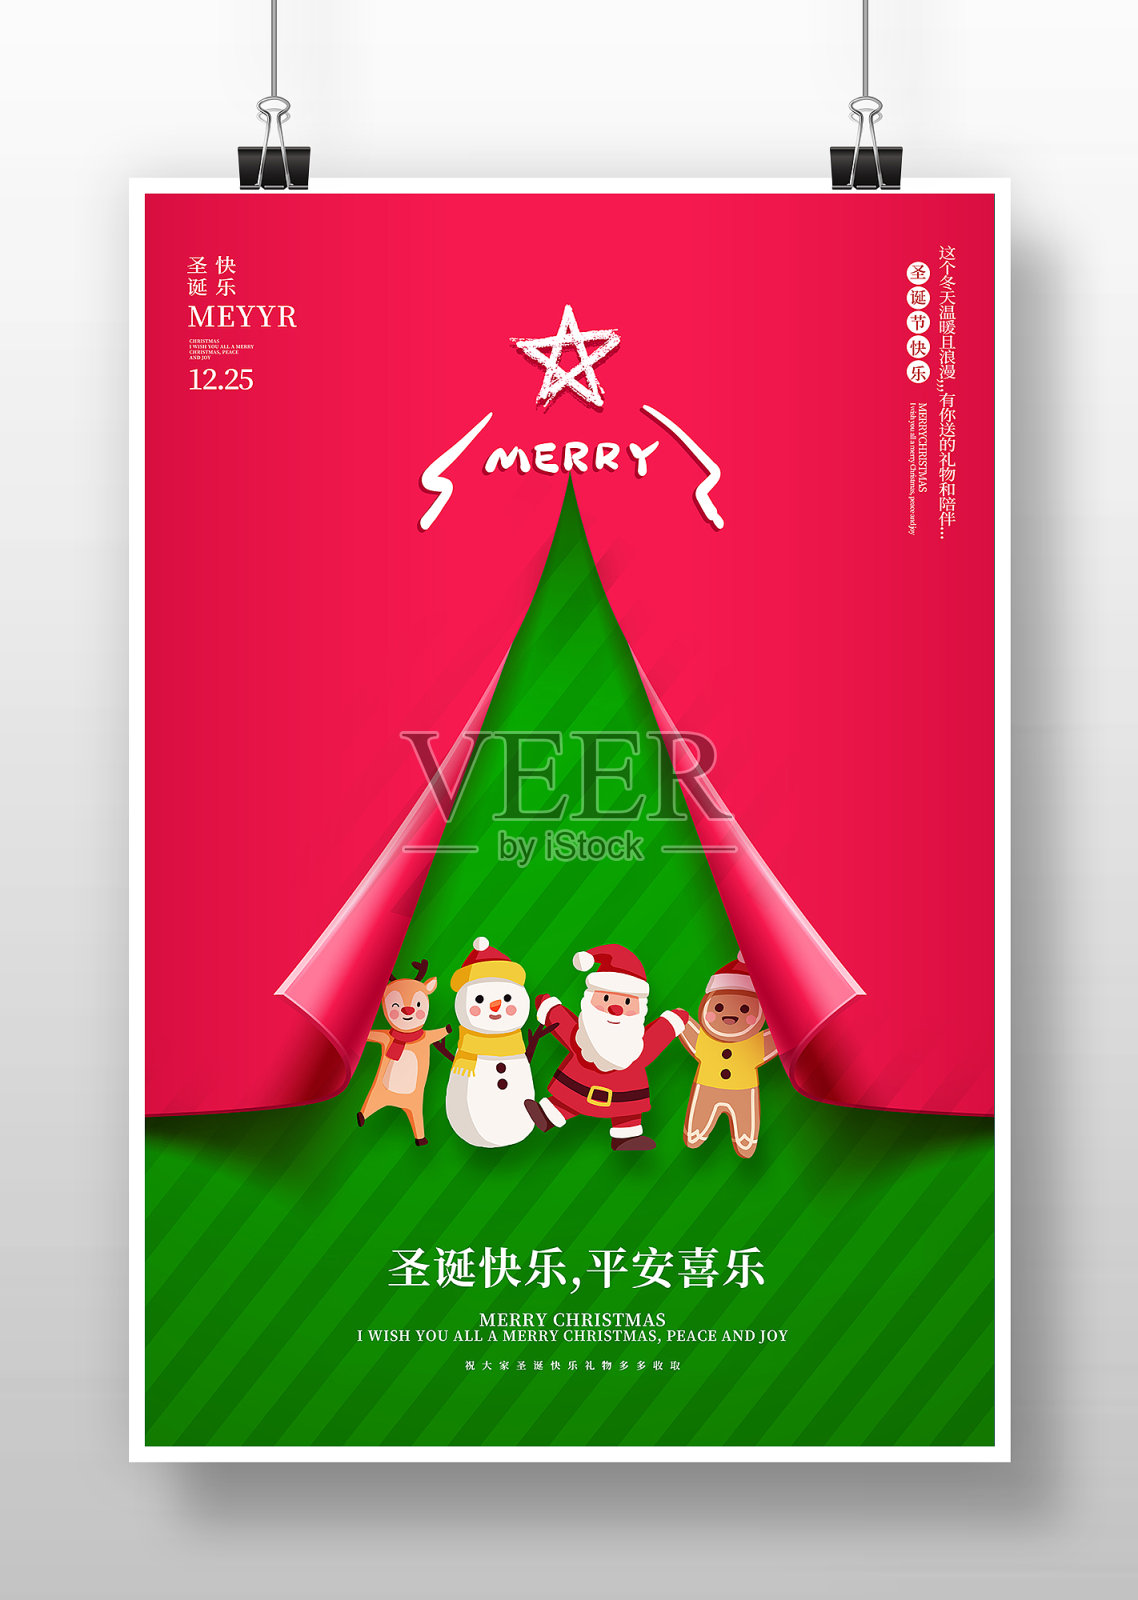 红绿创意圣诞节圣诞快乐海报设计模板素材